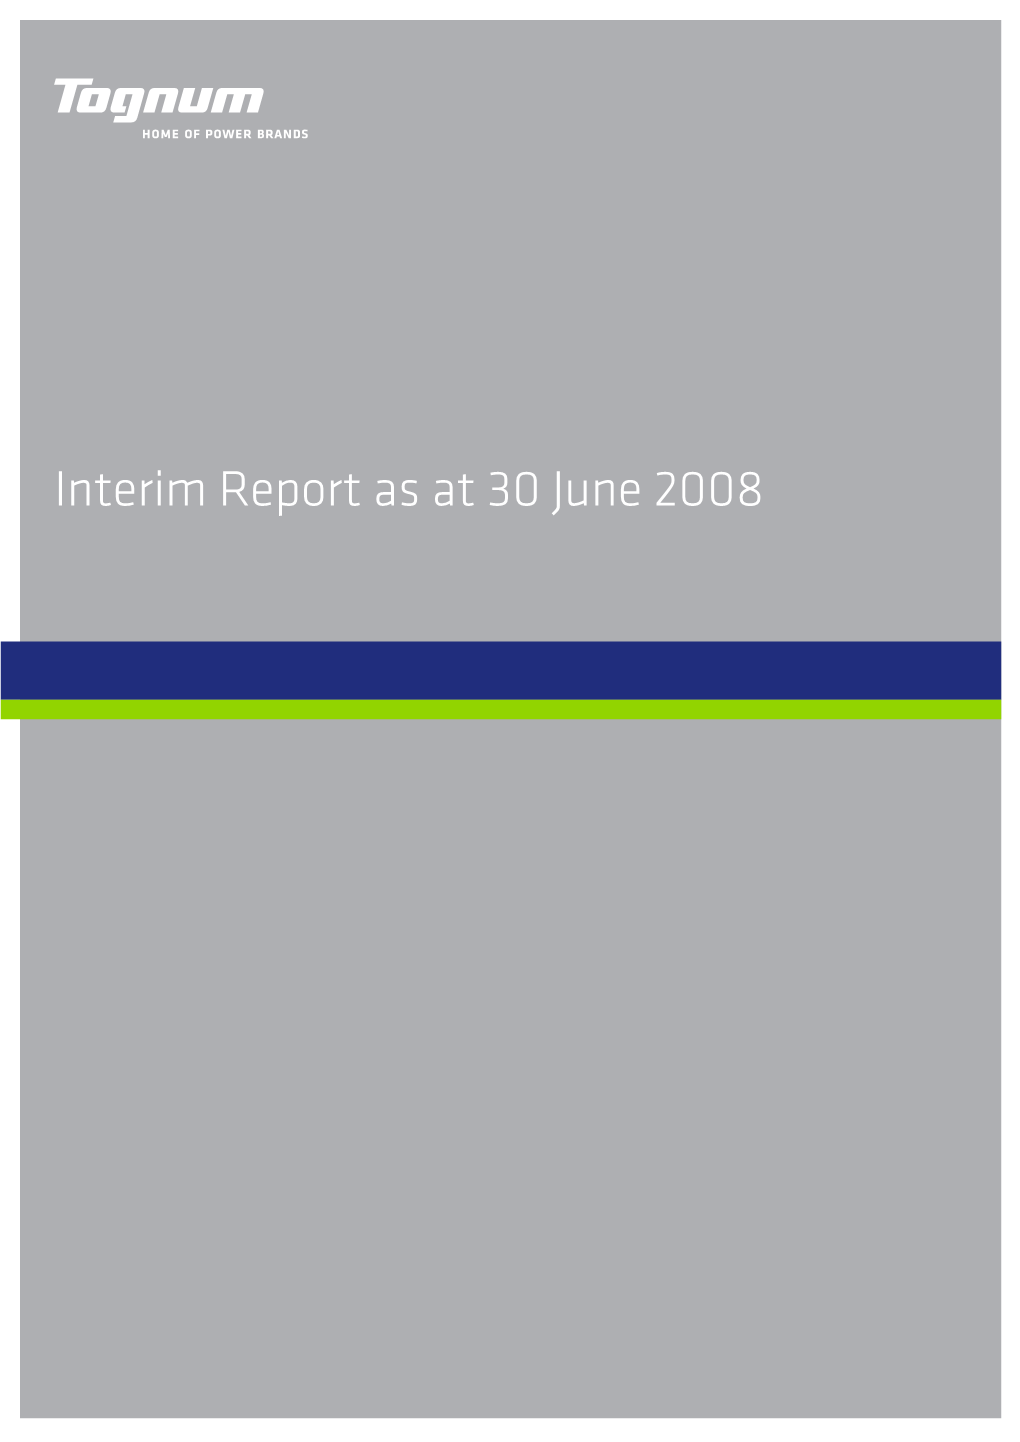 Tognum Group – Interim Report As at 30 June 2008